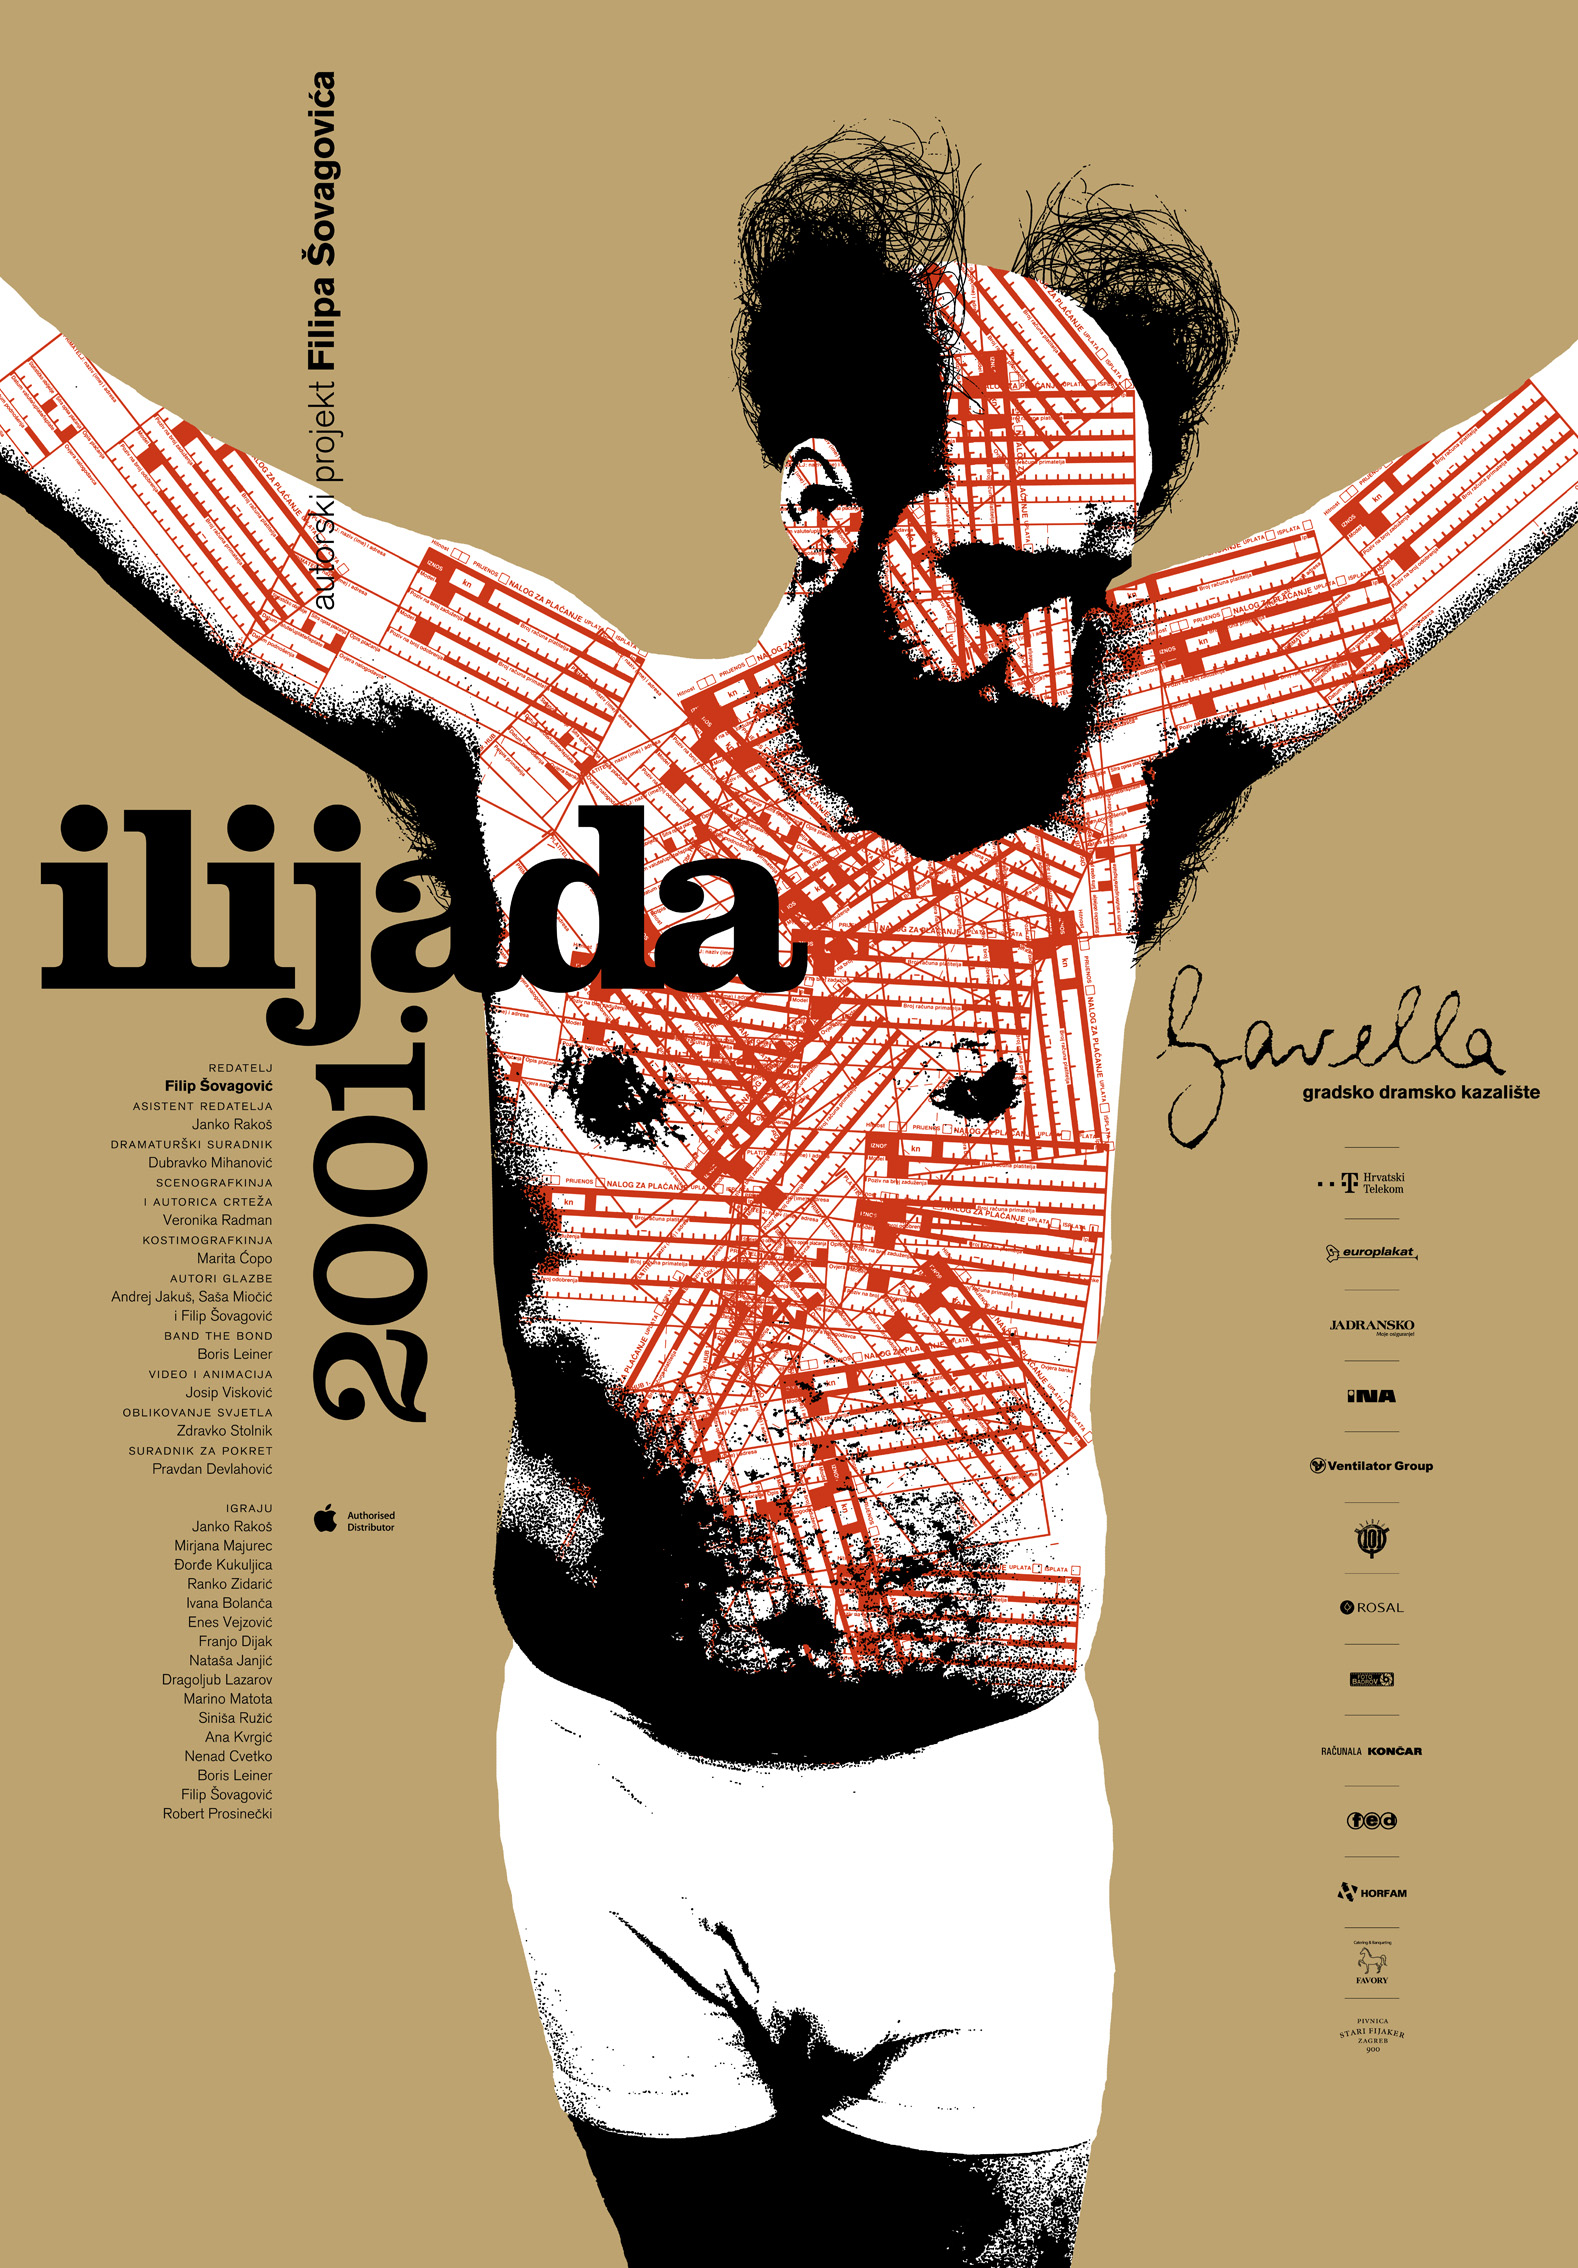 plakat predstave "ilijada 2001"